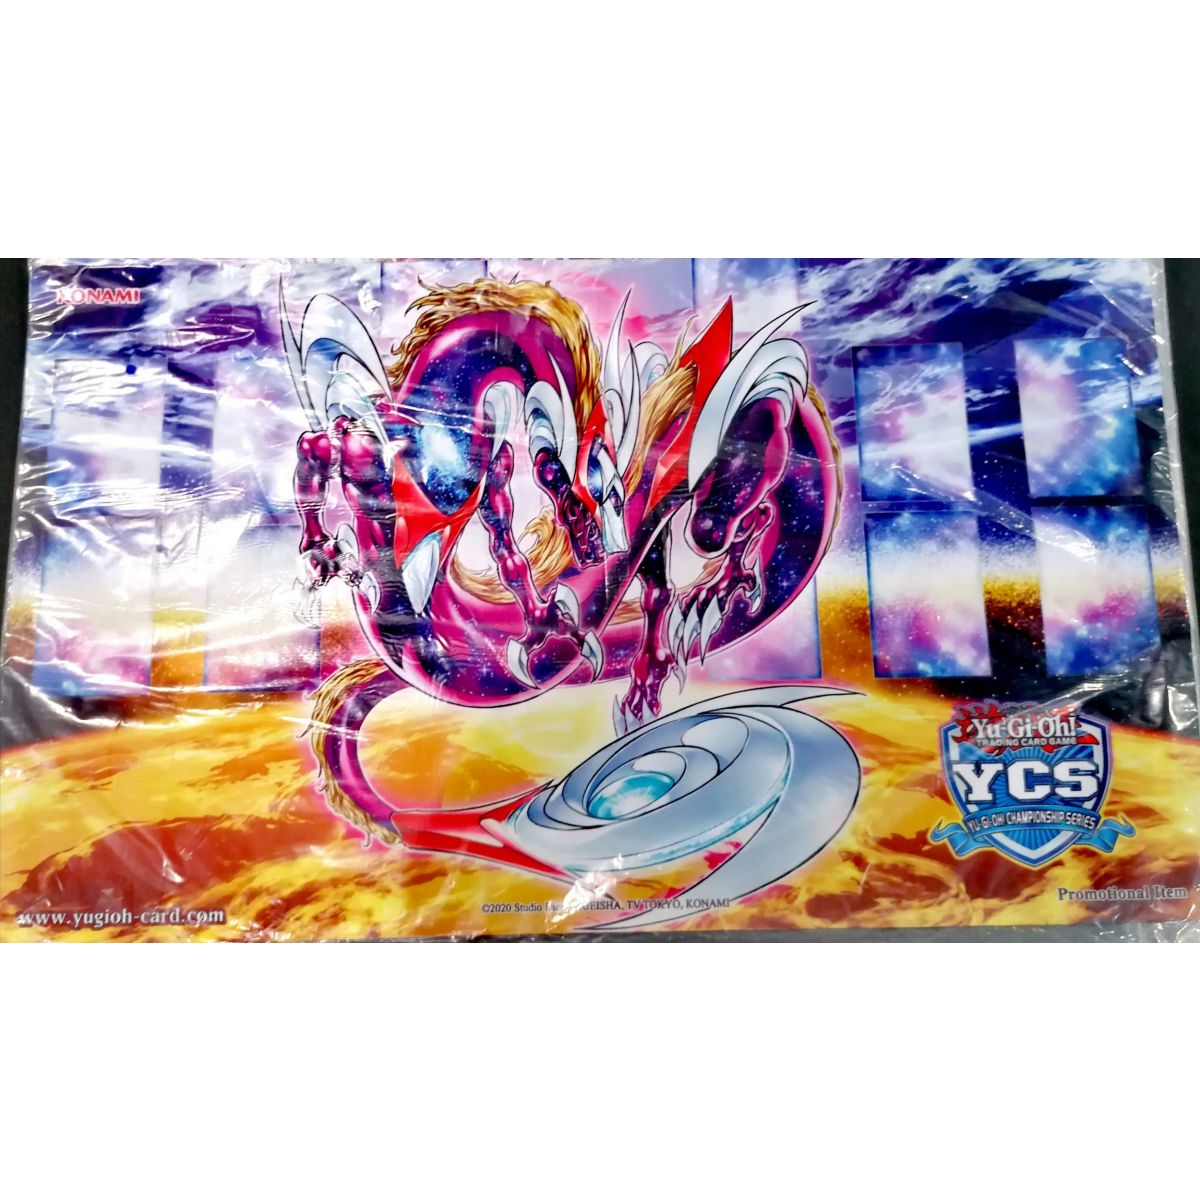 Item Yu-Gi-Oh! - Playmat - Top Cut YCS 2022 "Anotherverse Dragon" - SEALED